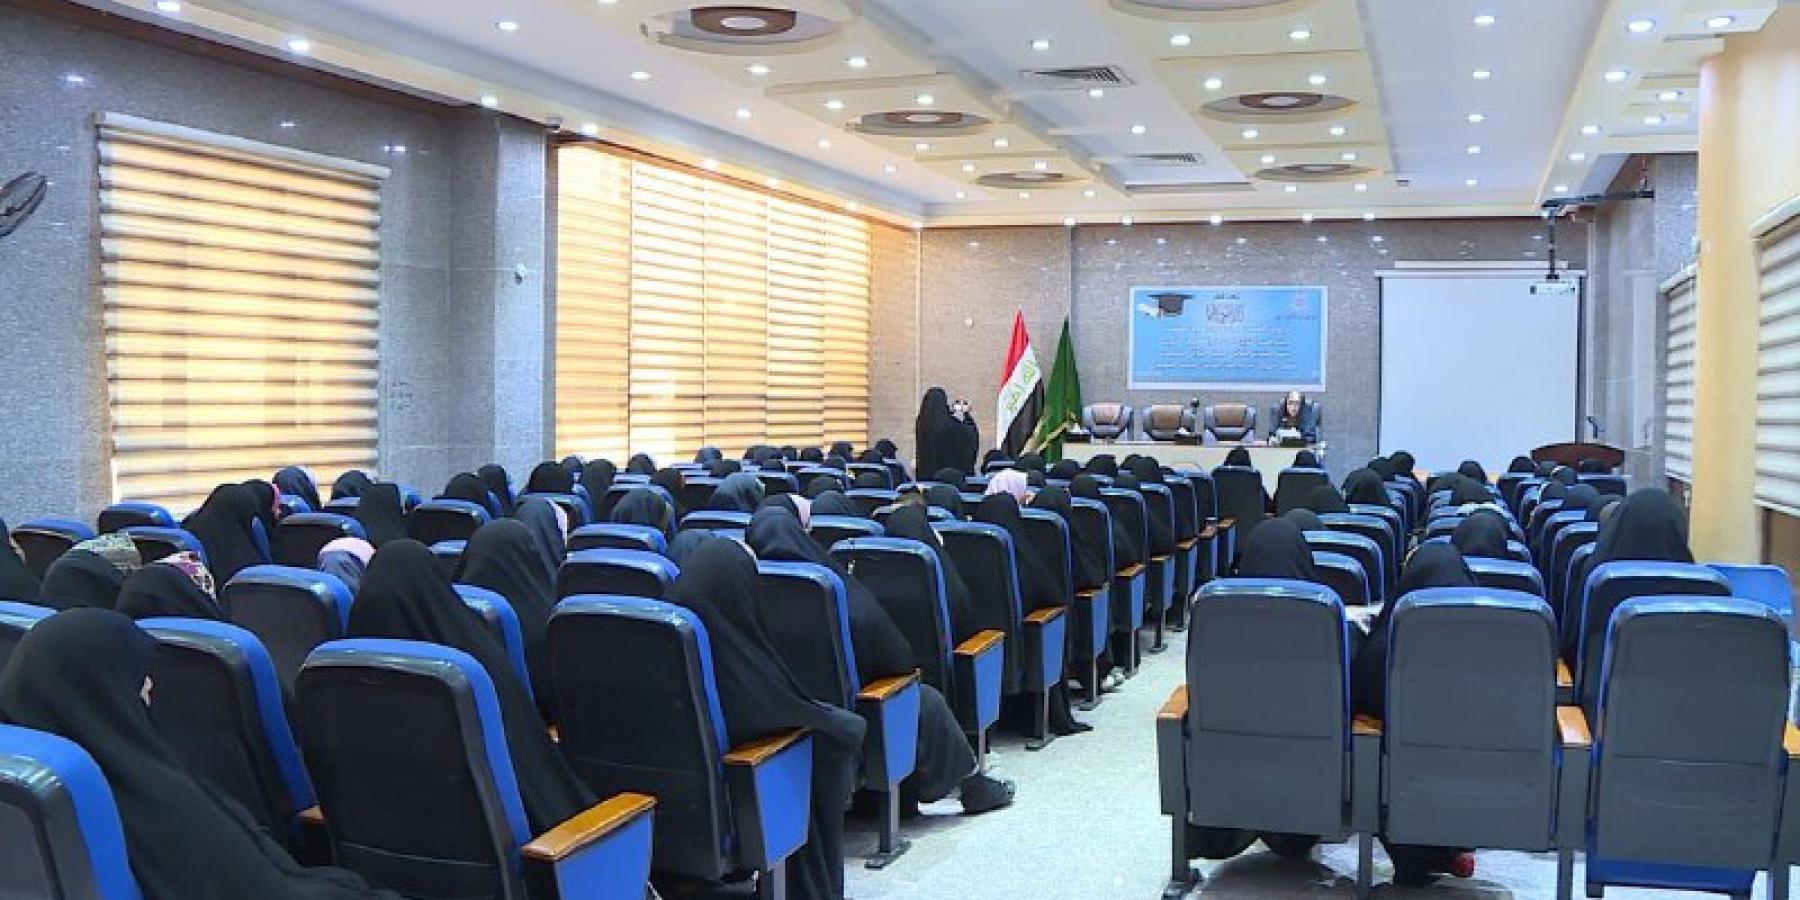 قسم الشؤون الدينية والفكرية النسوي يقيم محفلاً قرآنيا لطالبات جامعة الكوفة